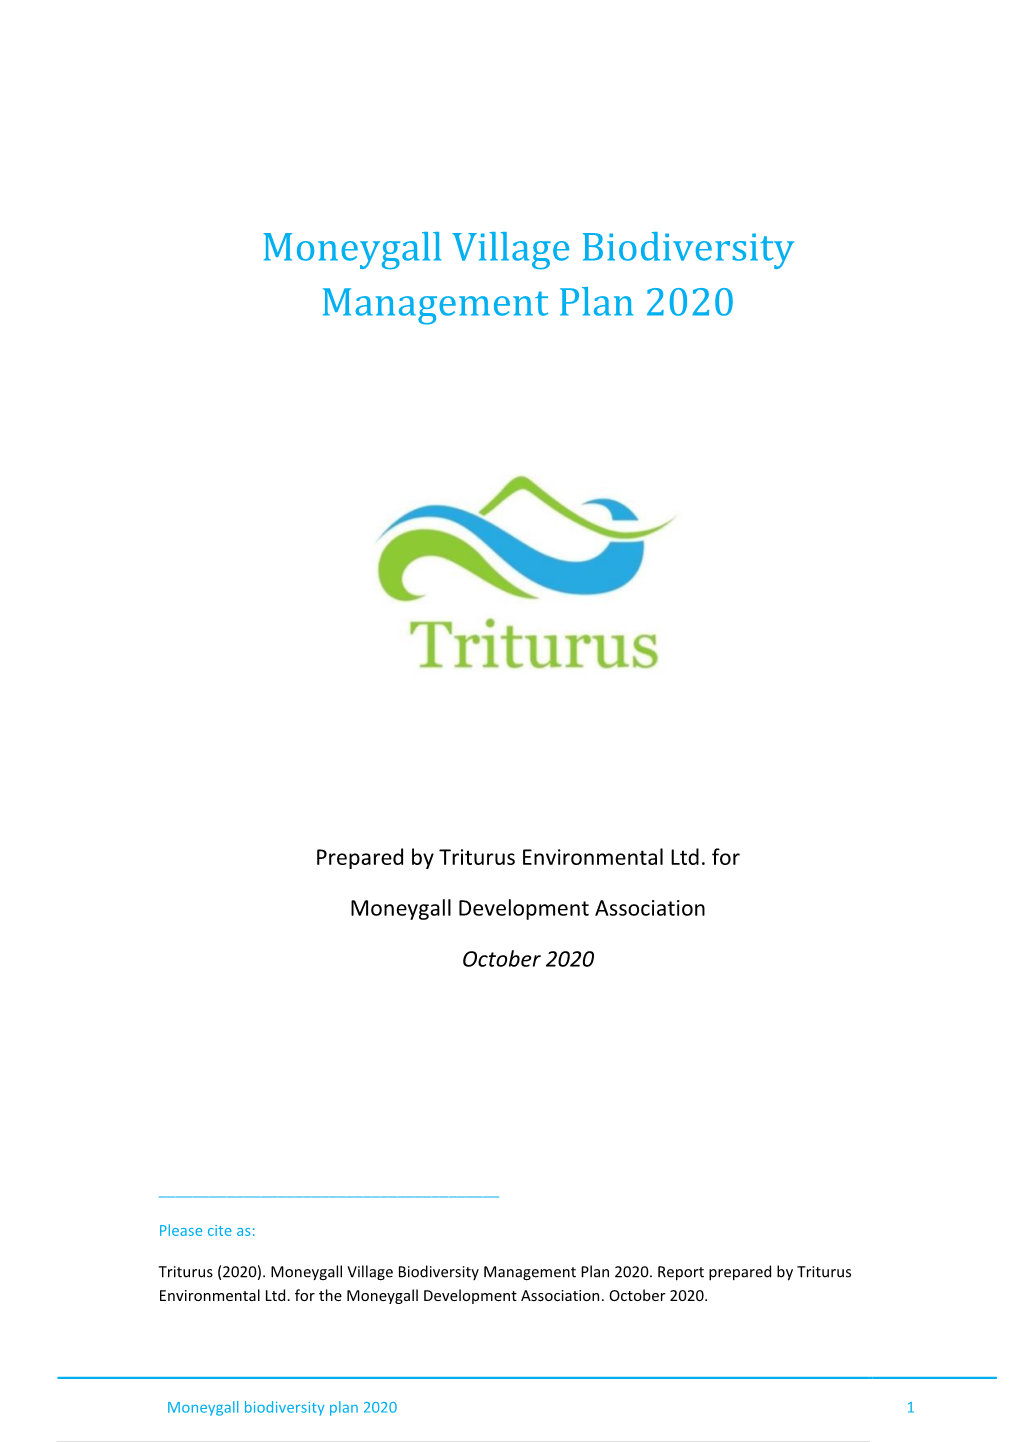 Triturus Biodiversity Report Template